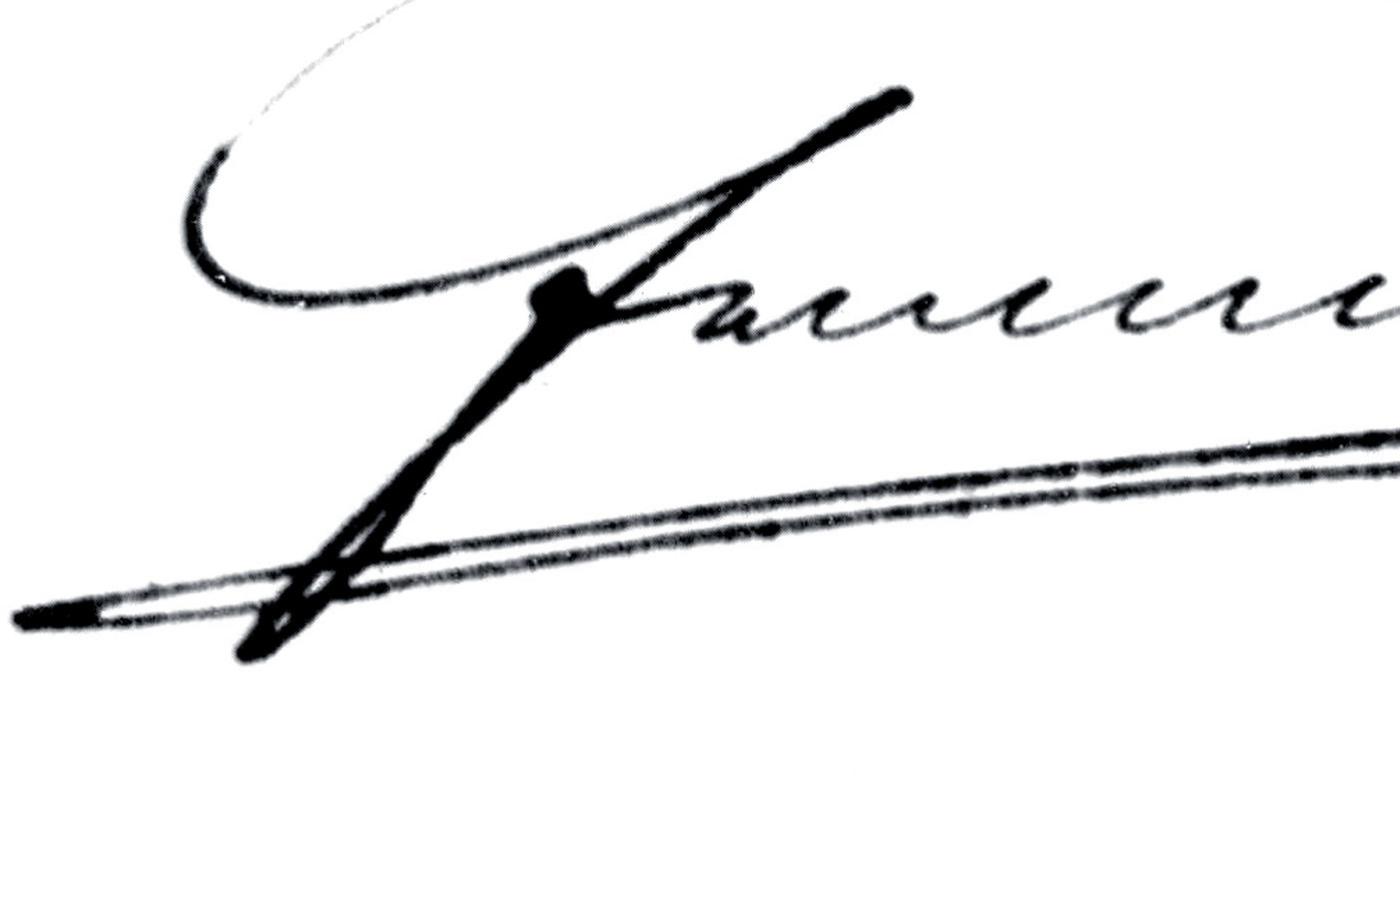 Podpis Franciszka Józefa